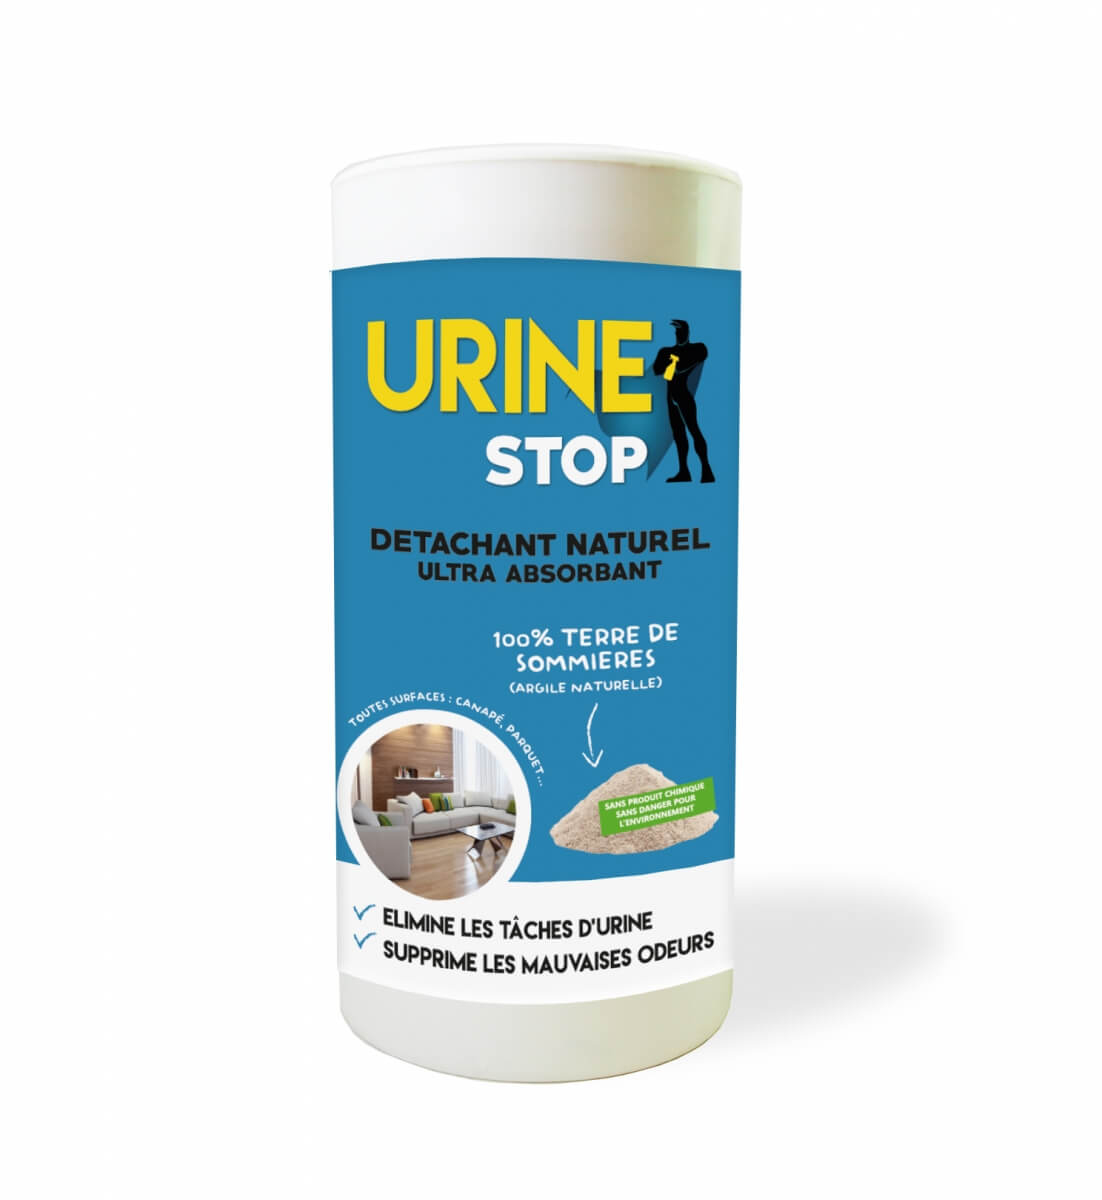 Limpiador de orina de gatos Urine Stop